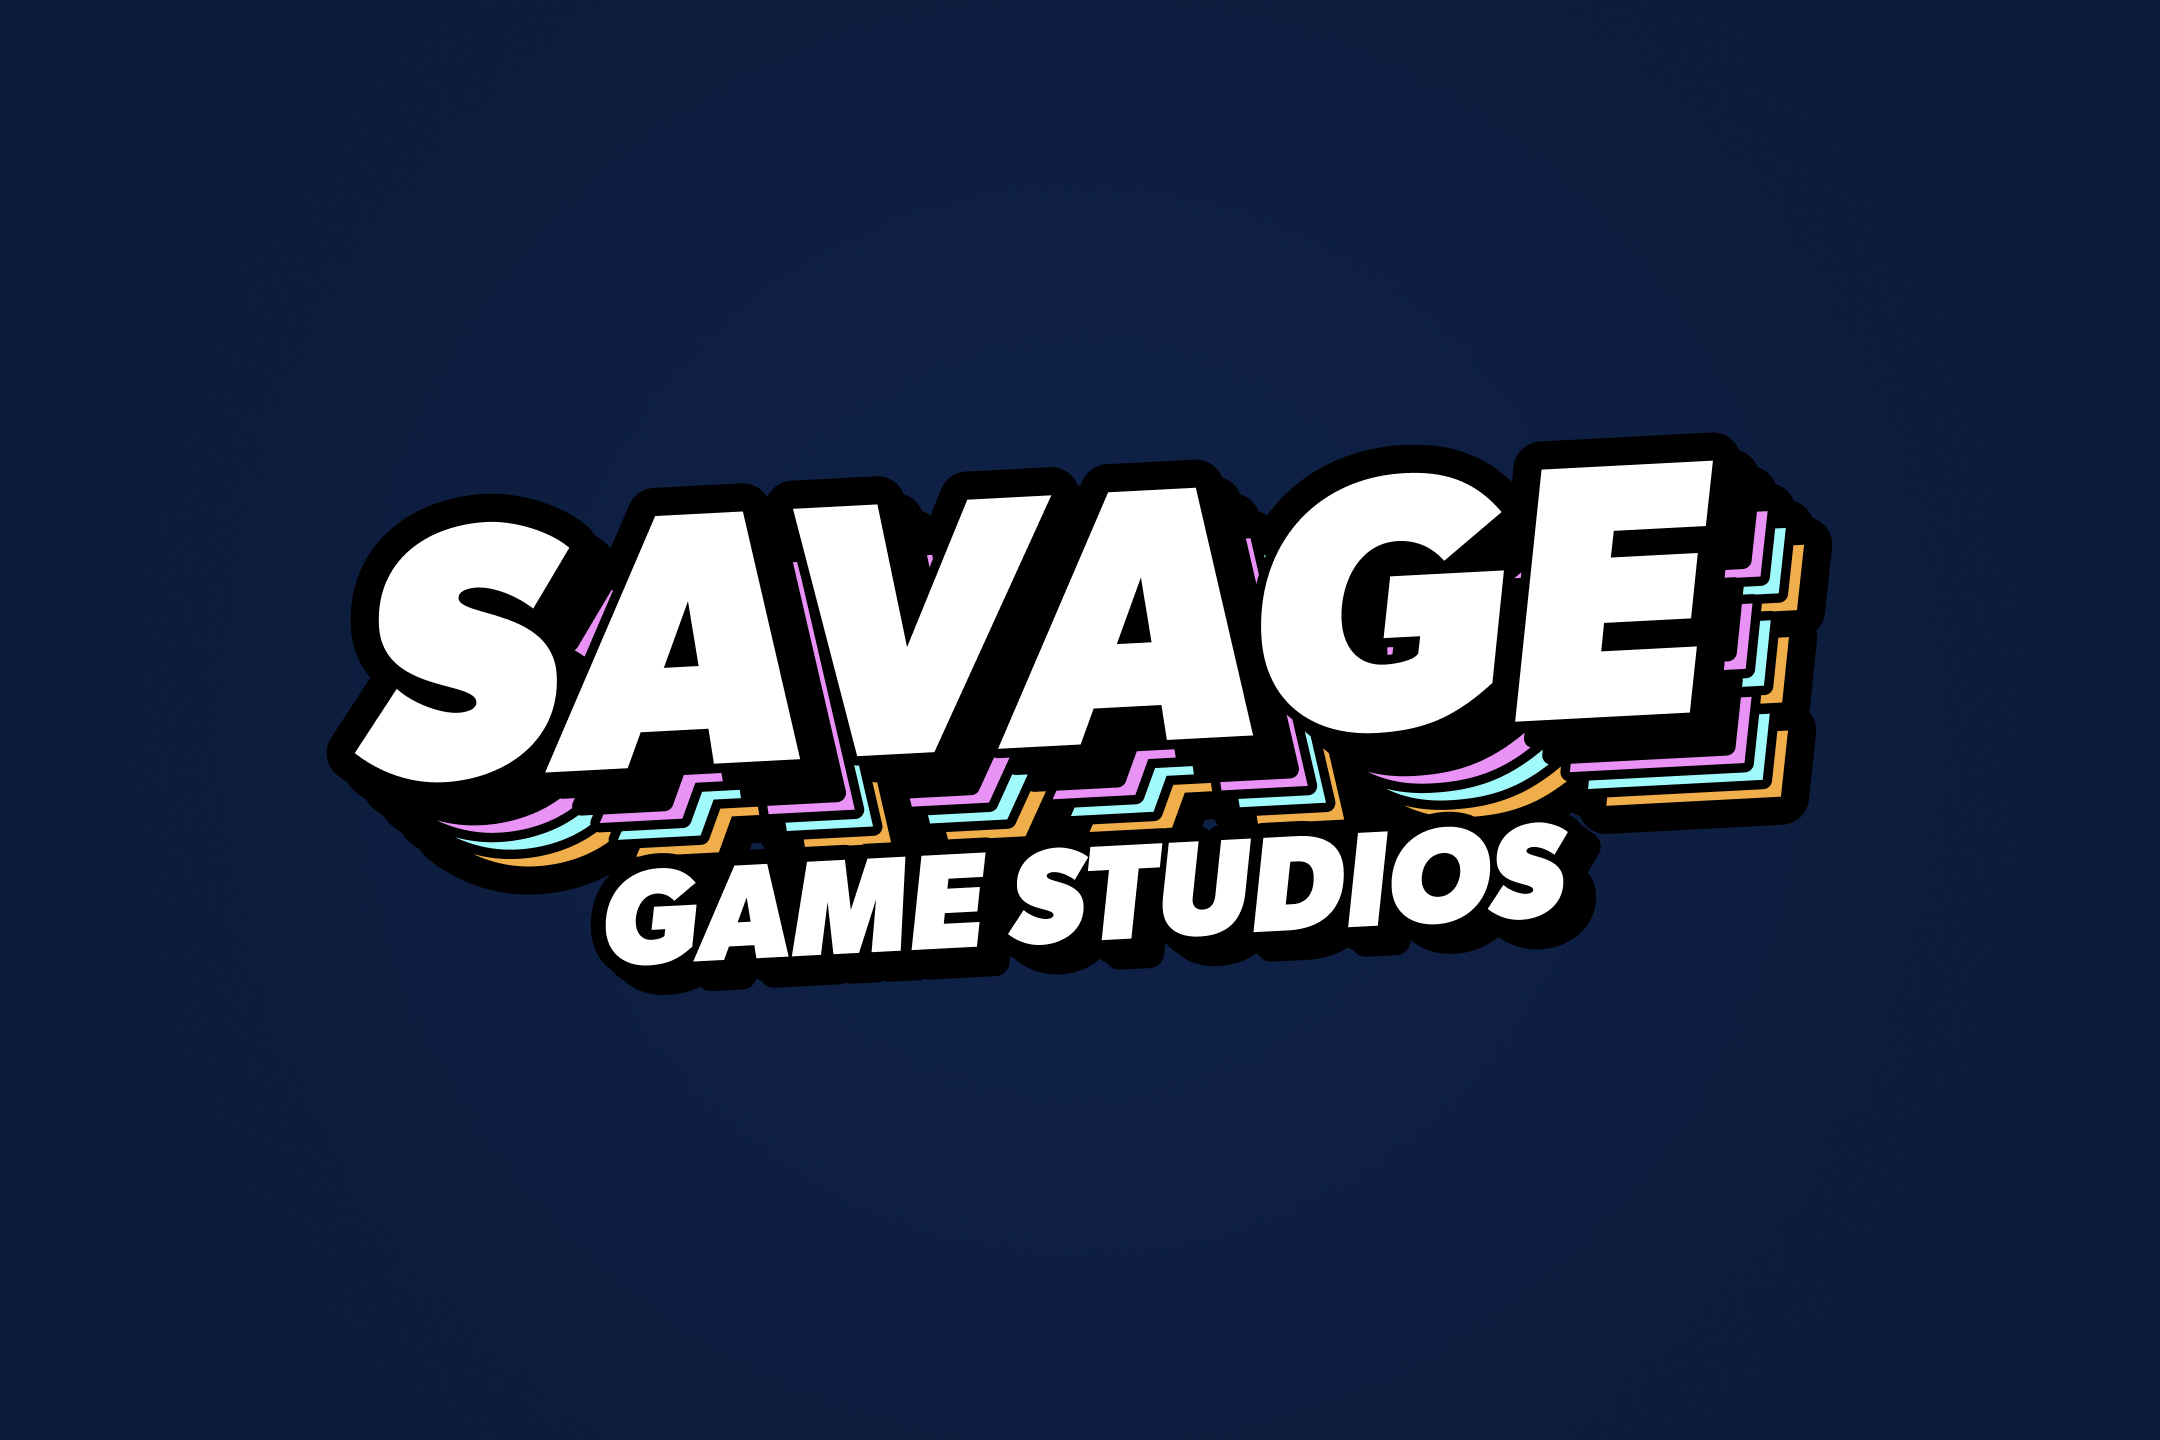 Savage games logo